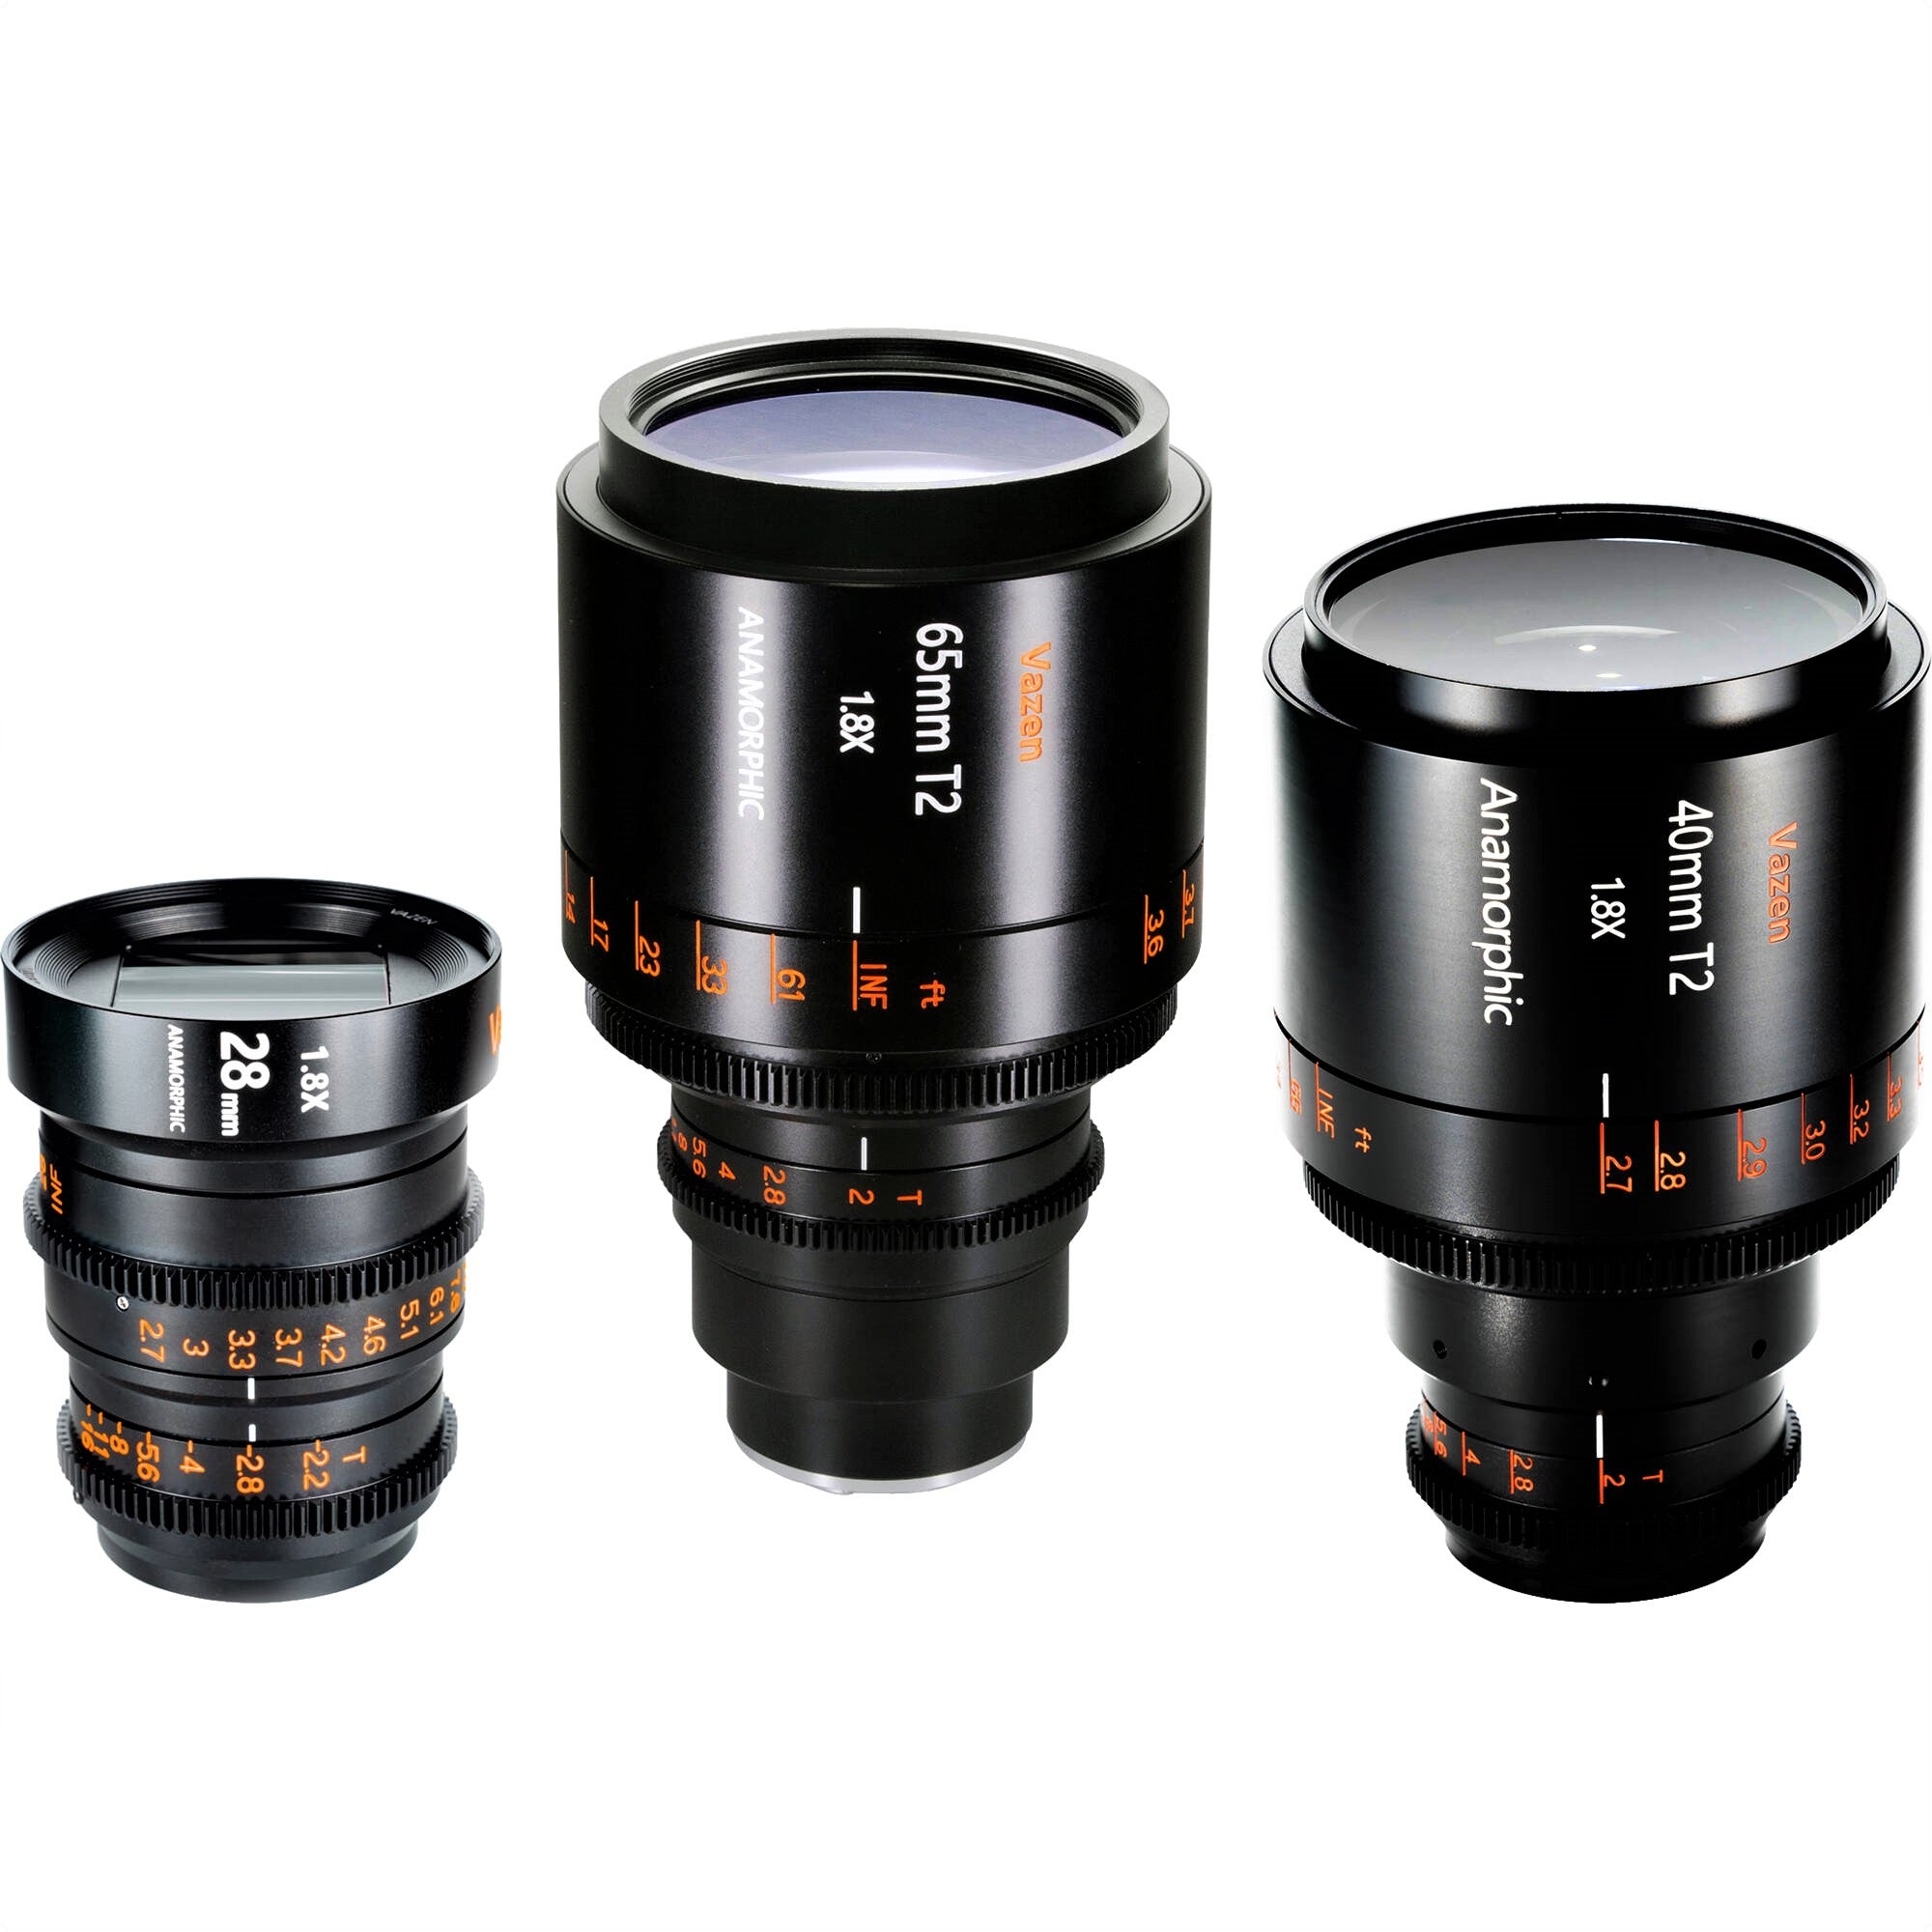 Vazen 28mm T2.2 1.8x Anamorphic Lens (Left Side), Vazen 65mm T2 1.8x Anamorphic Lens (Middle), and Vazen 40mm T2 1.8x Anamorphic Lens (Right Side)